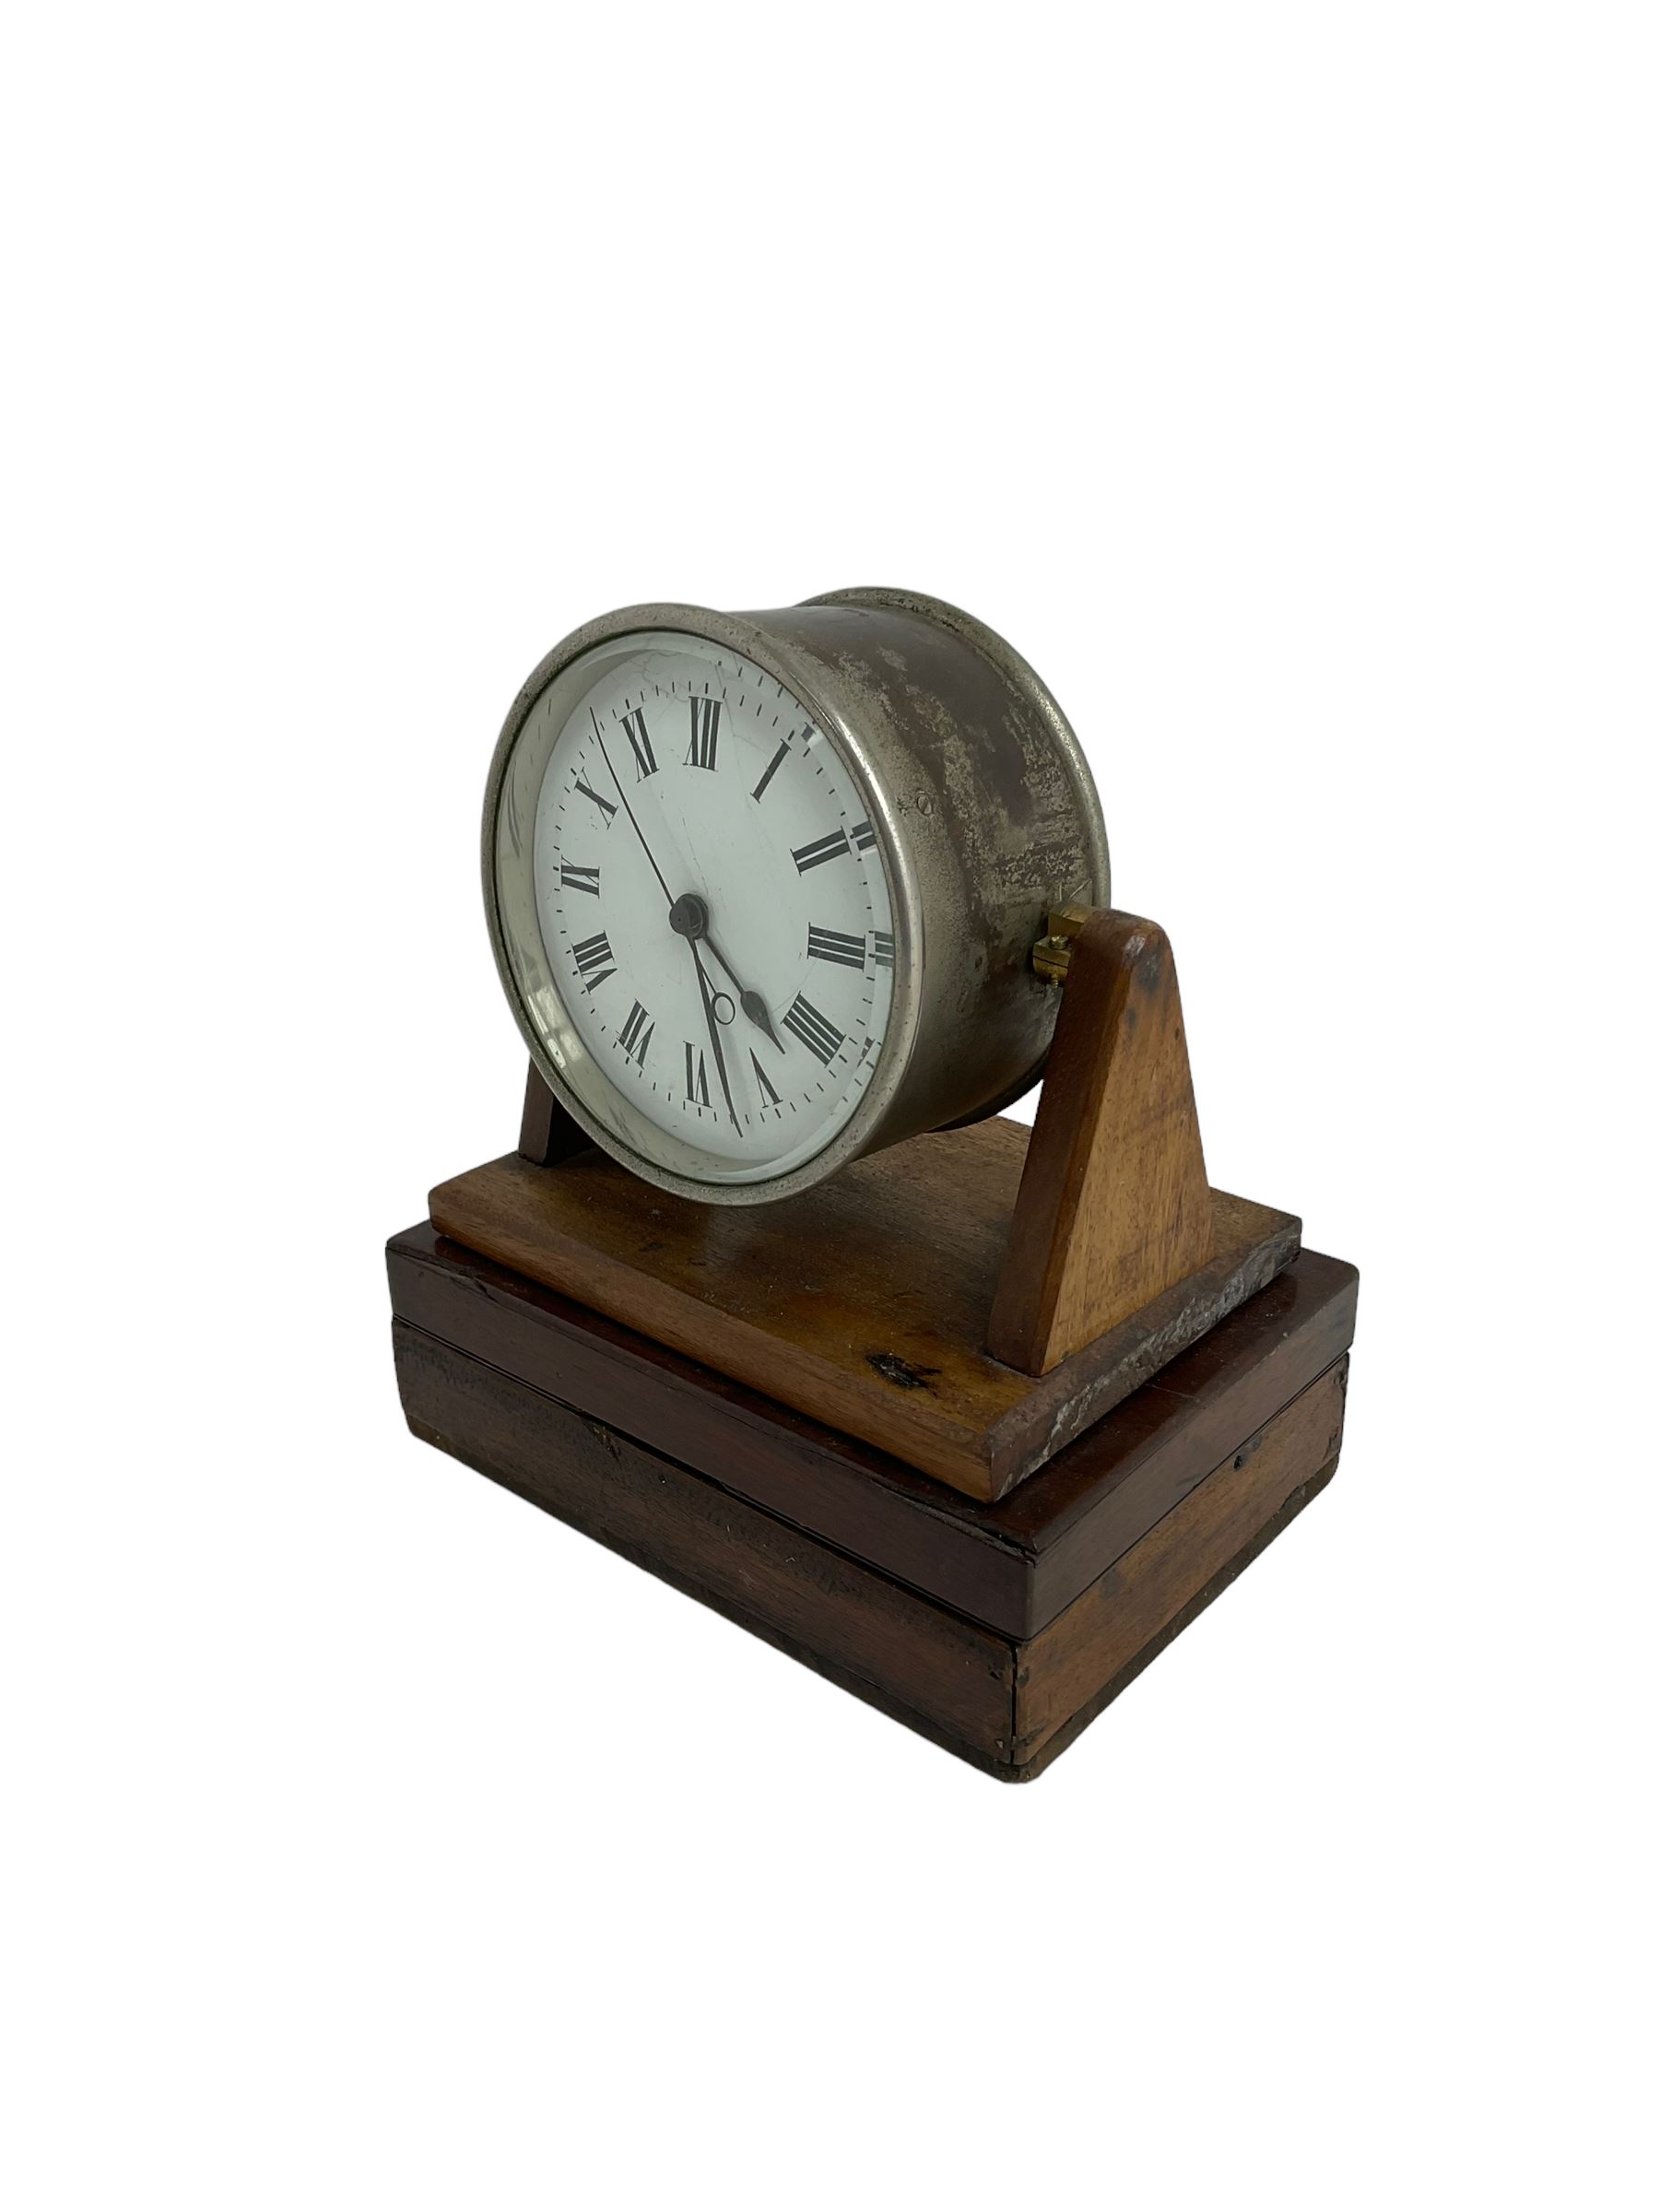 English - Edwardian 8-day desk clock - Image 2 of 3